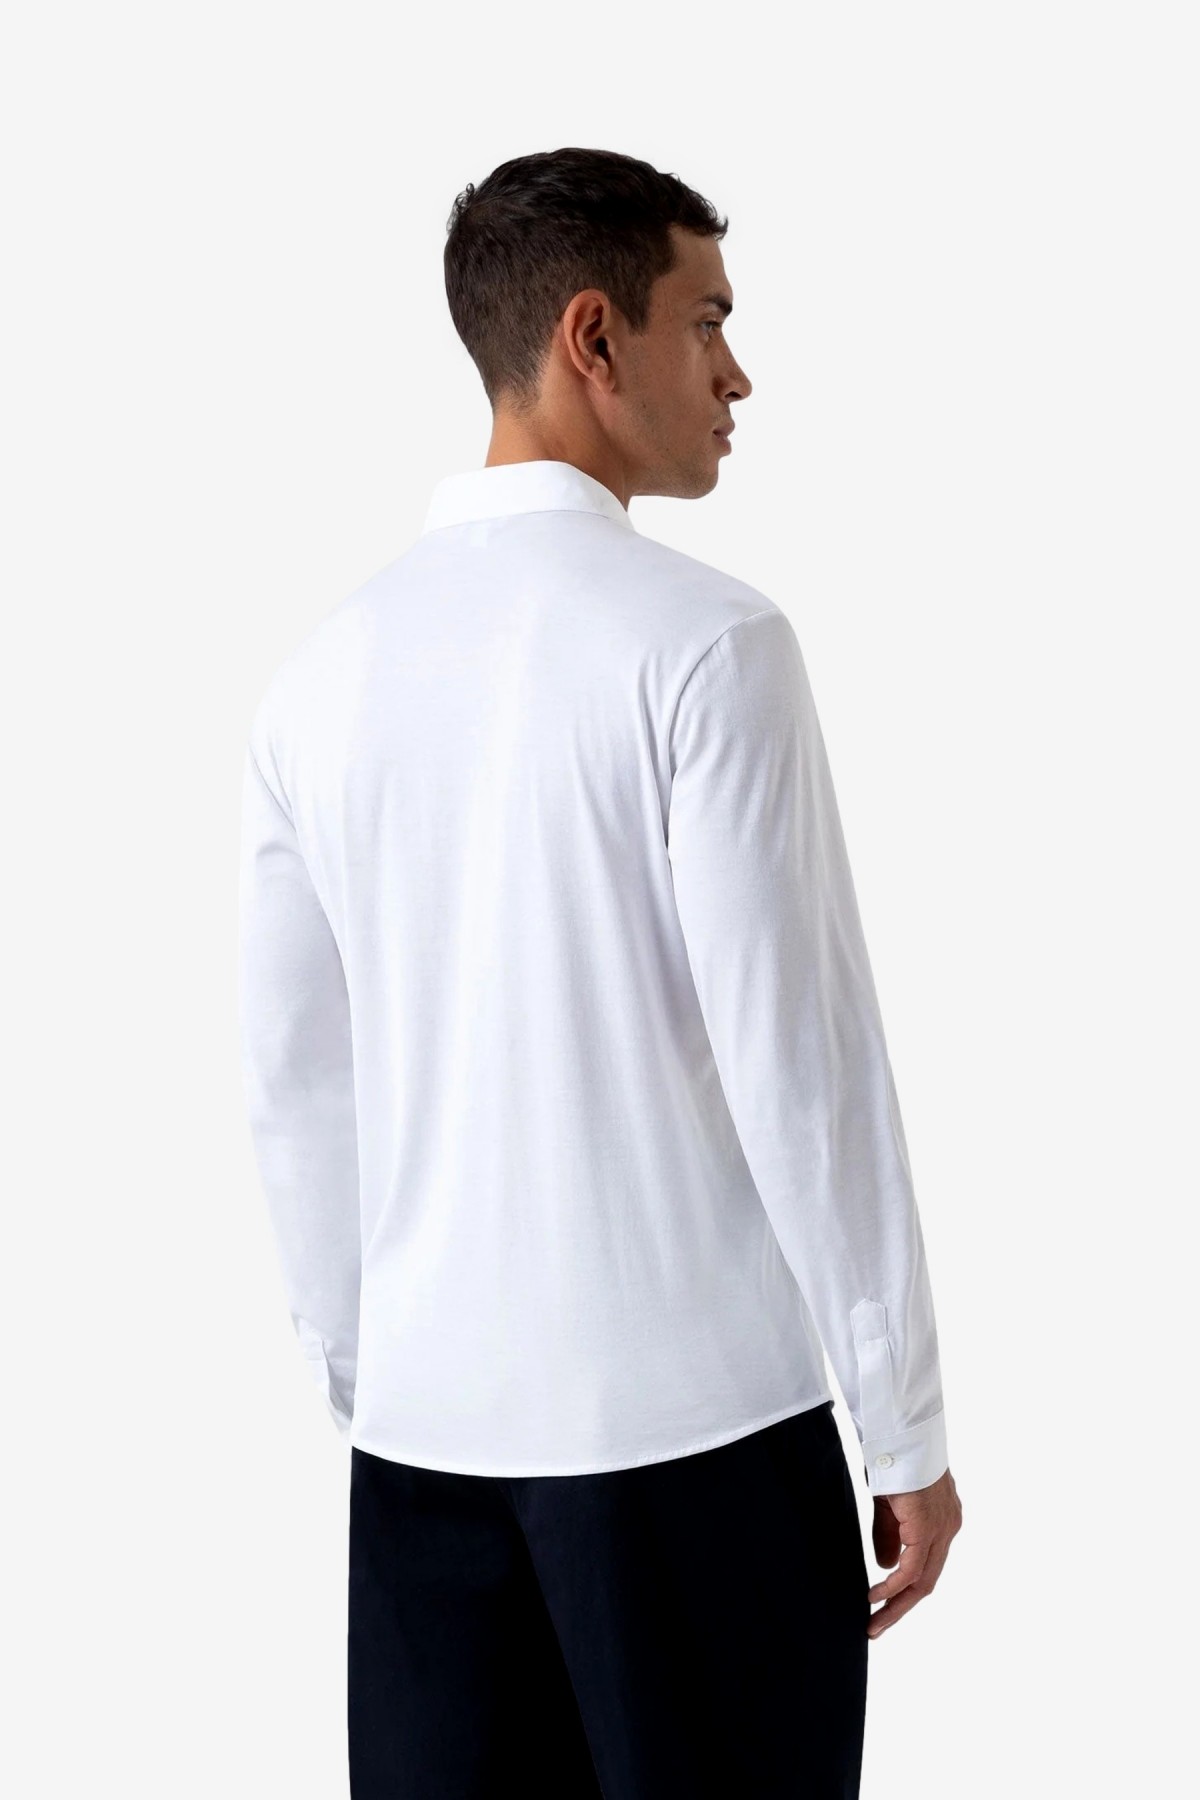 Sunspel SS Shirt in White